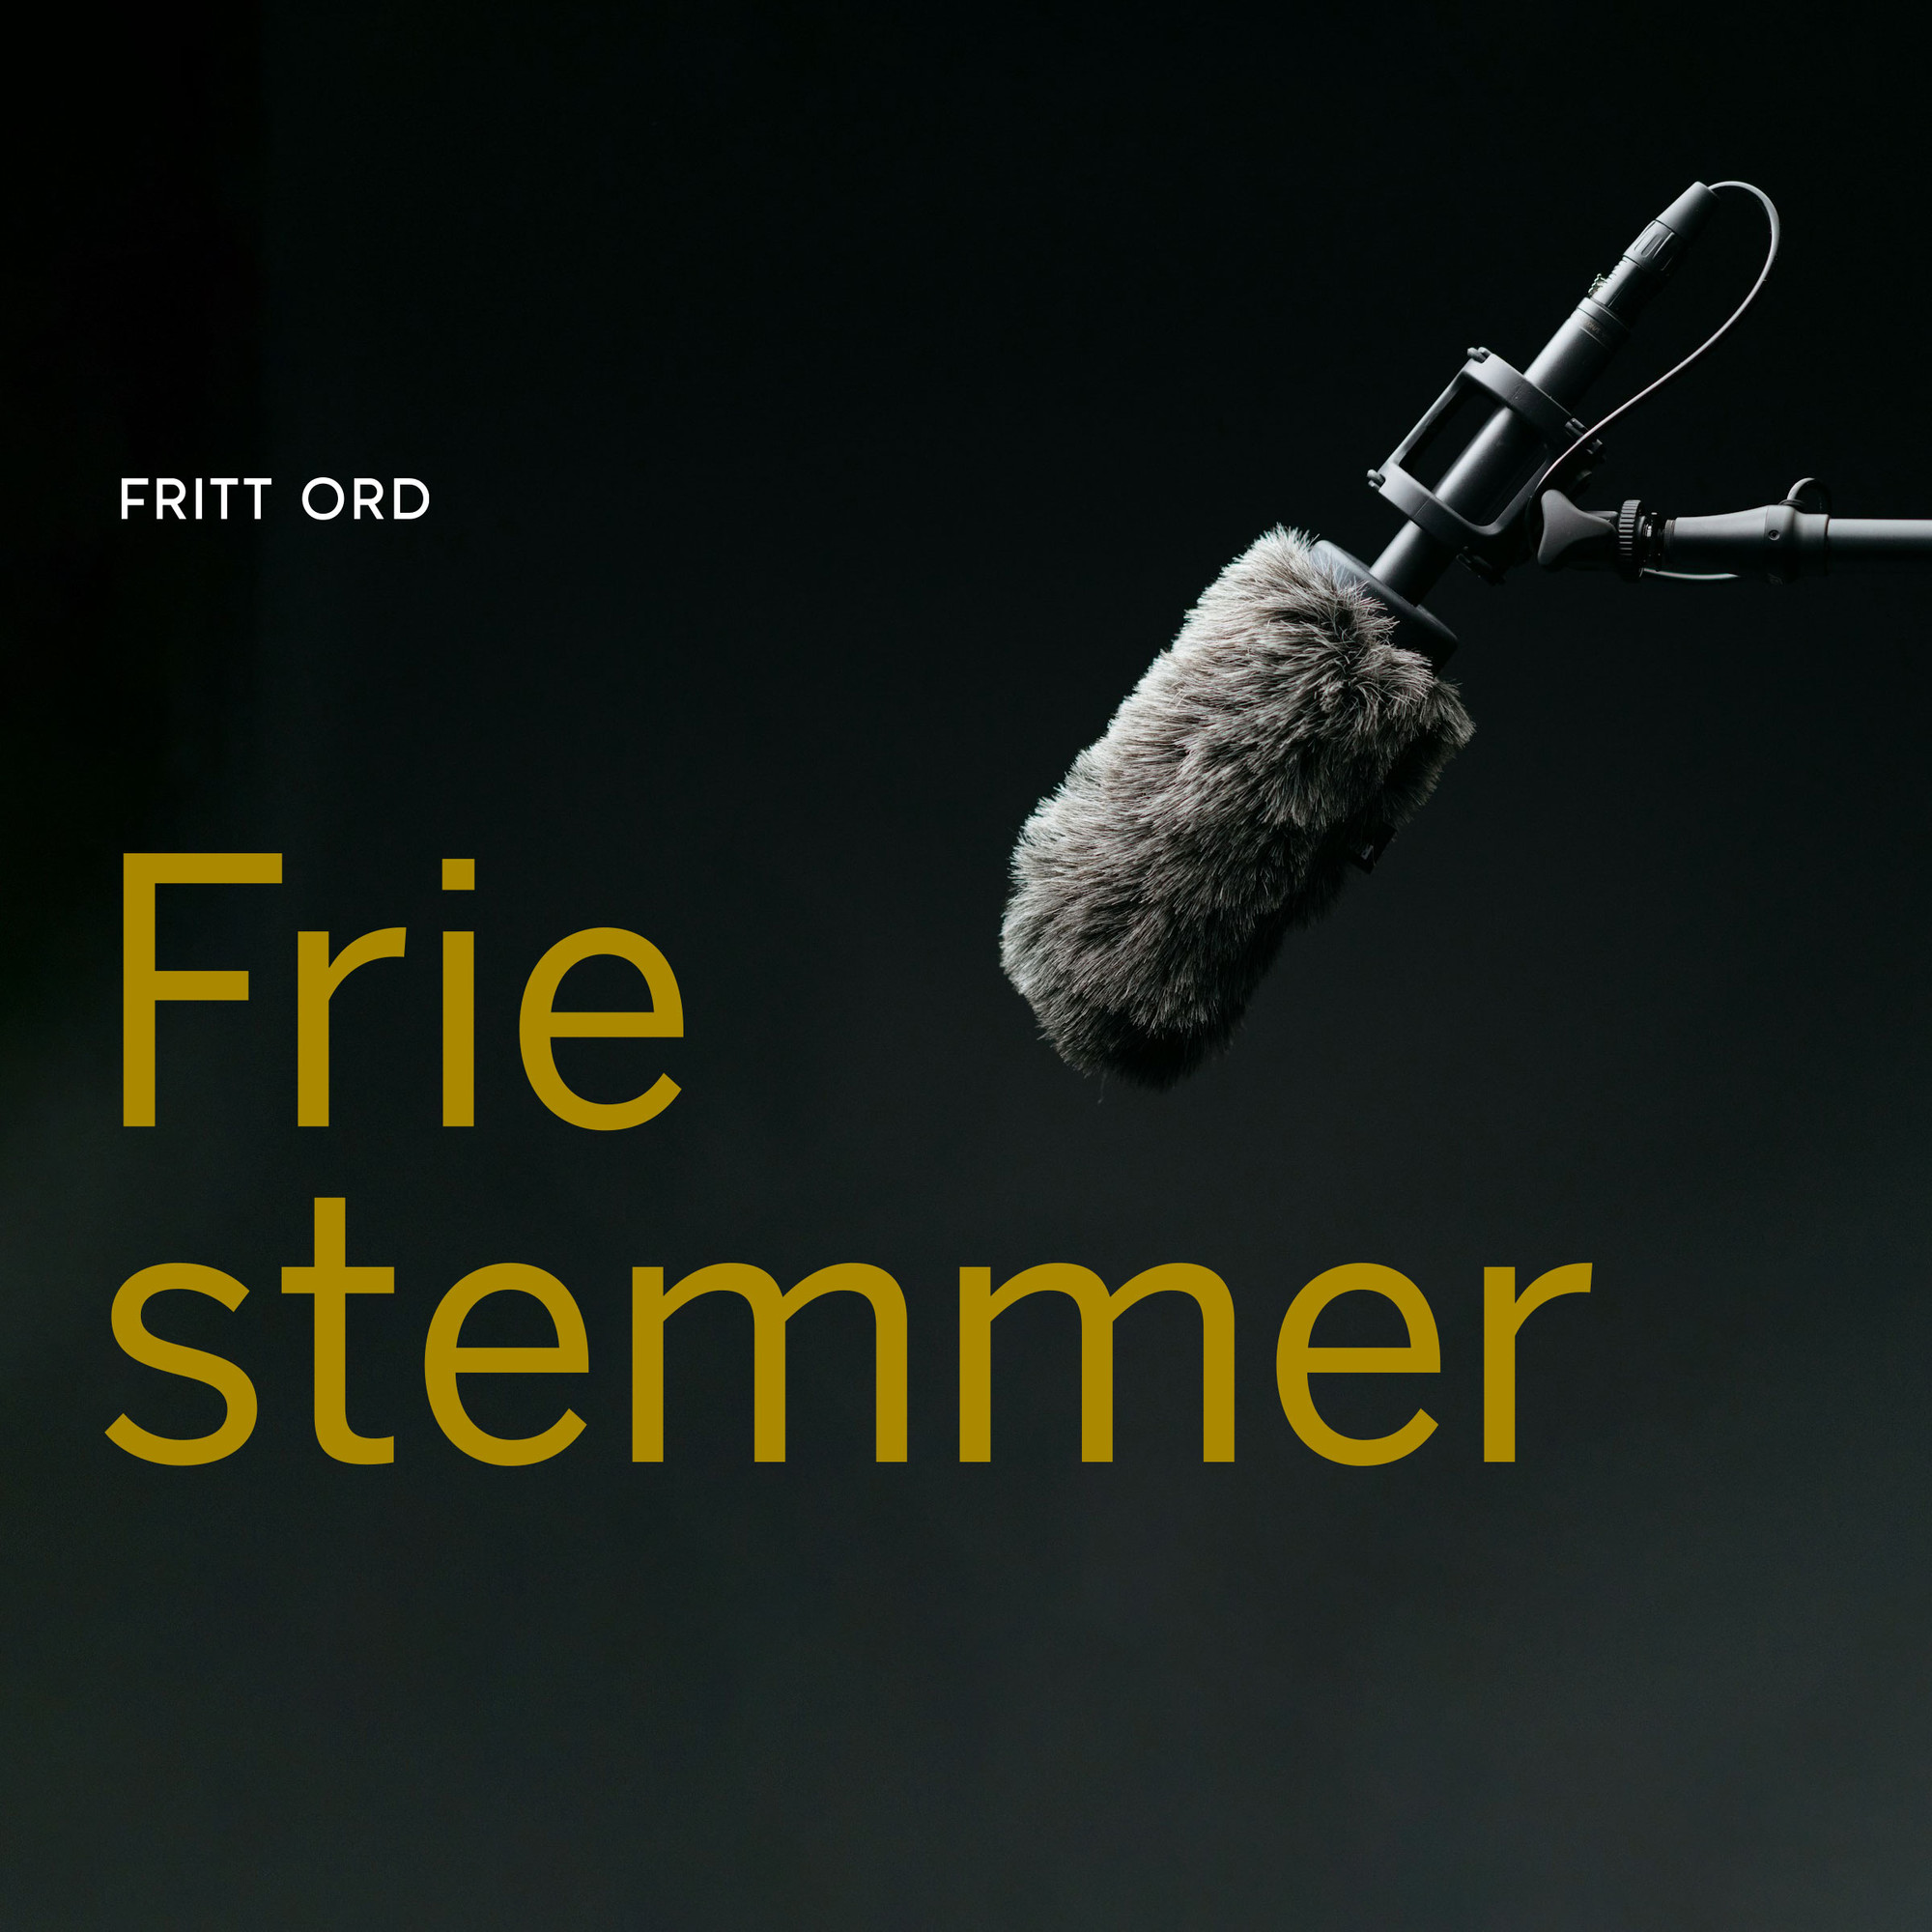 Friestemmer black condenser microphone